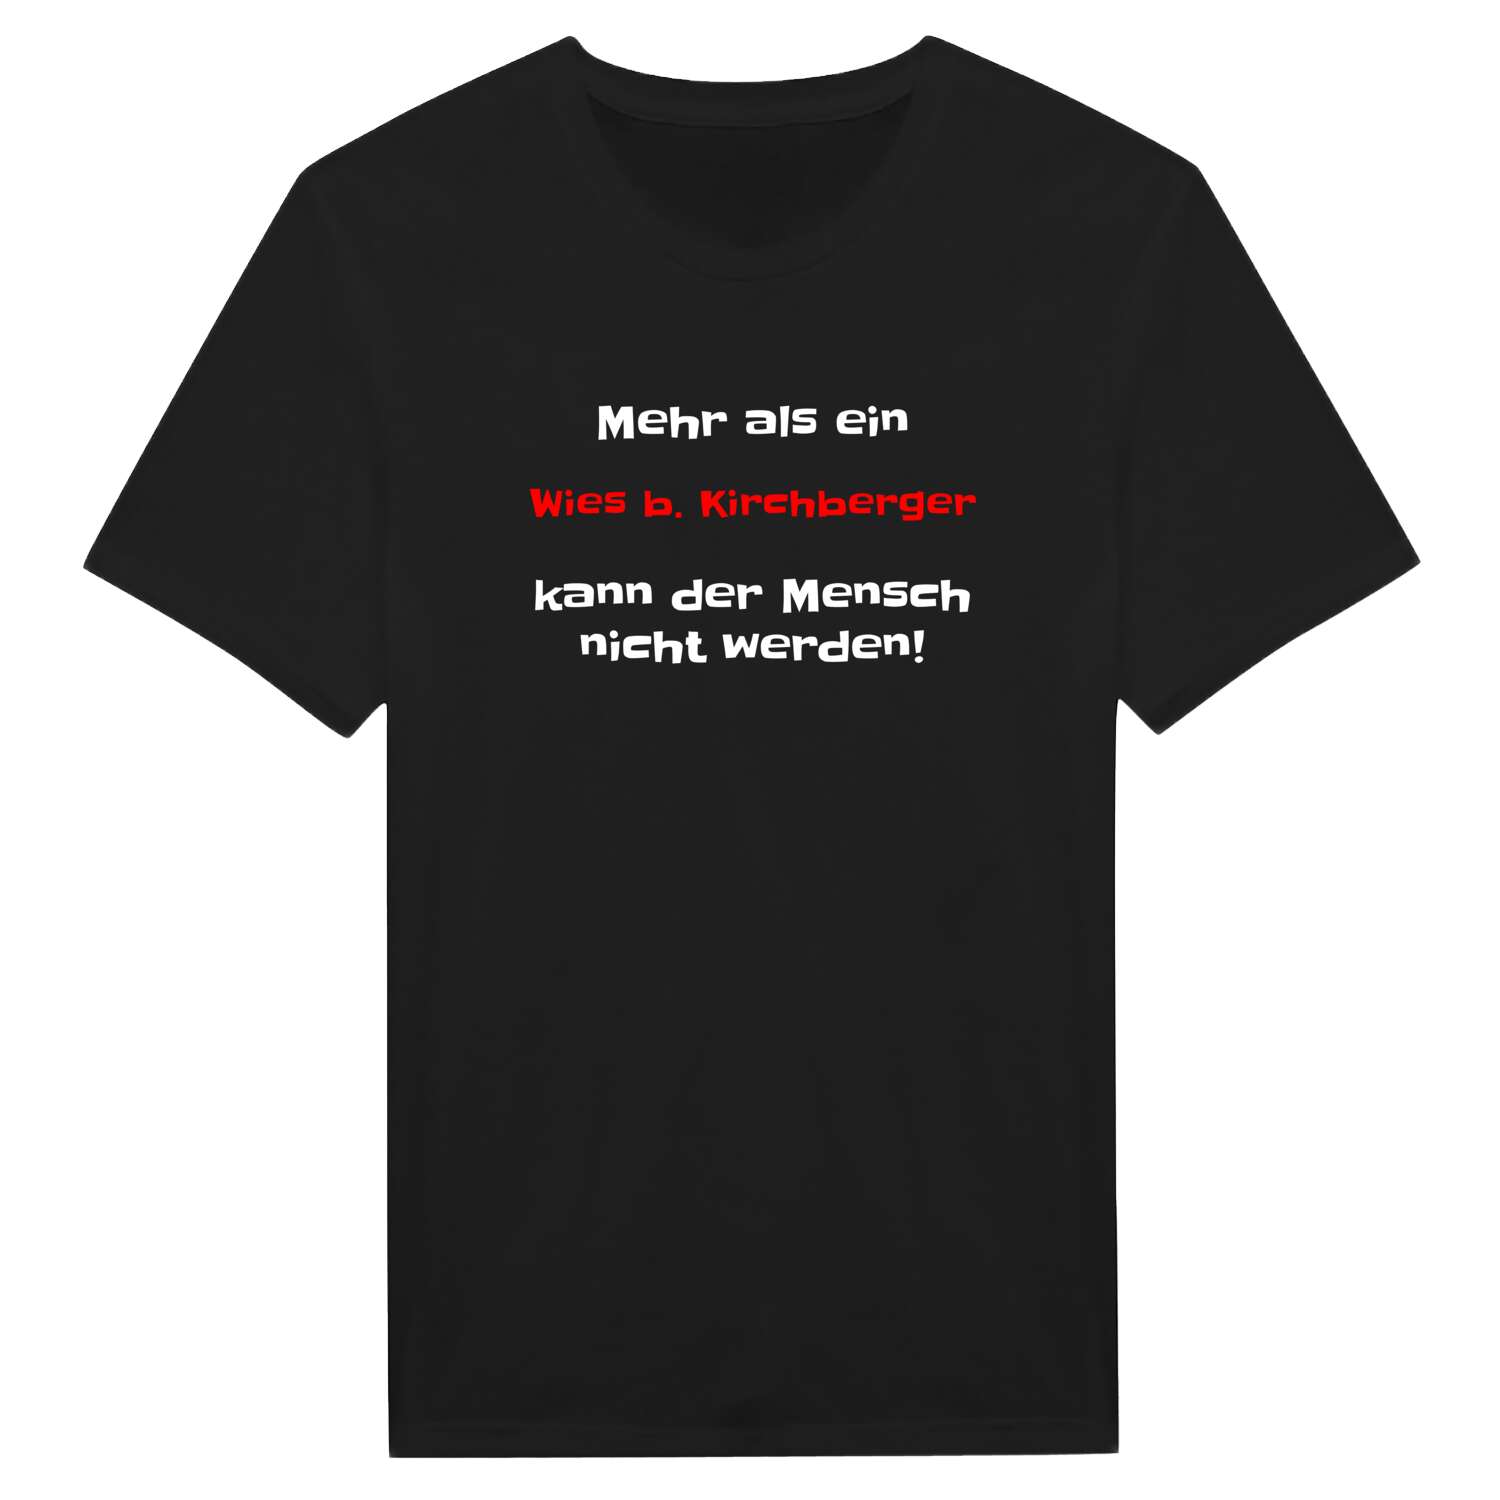 Wies b. Kirchberg T-Shirt »Mehr als ein«